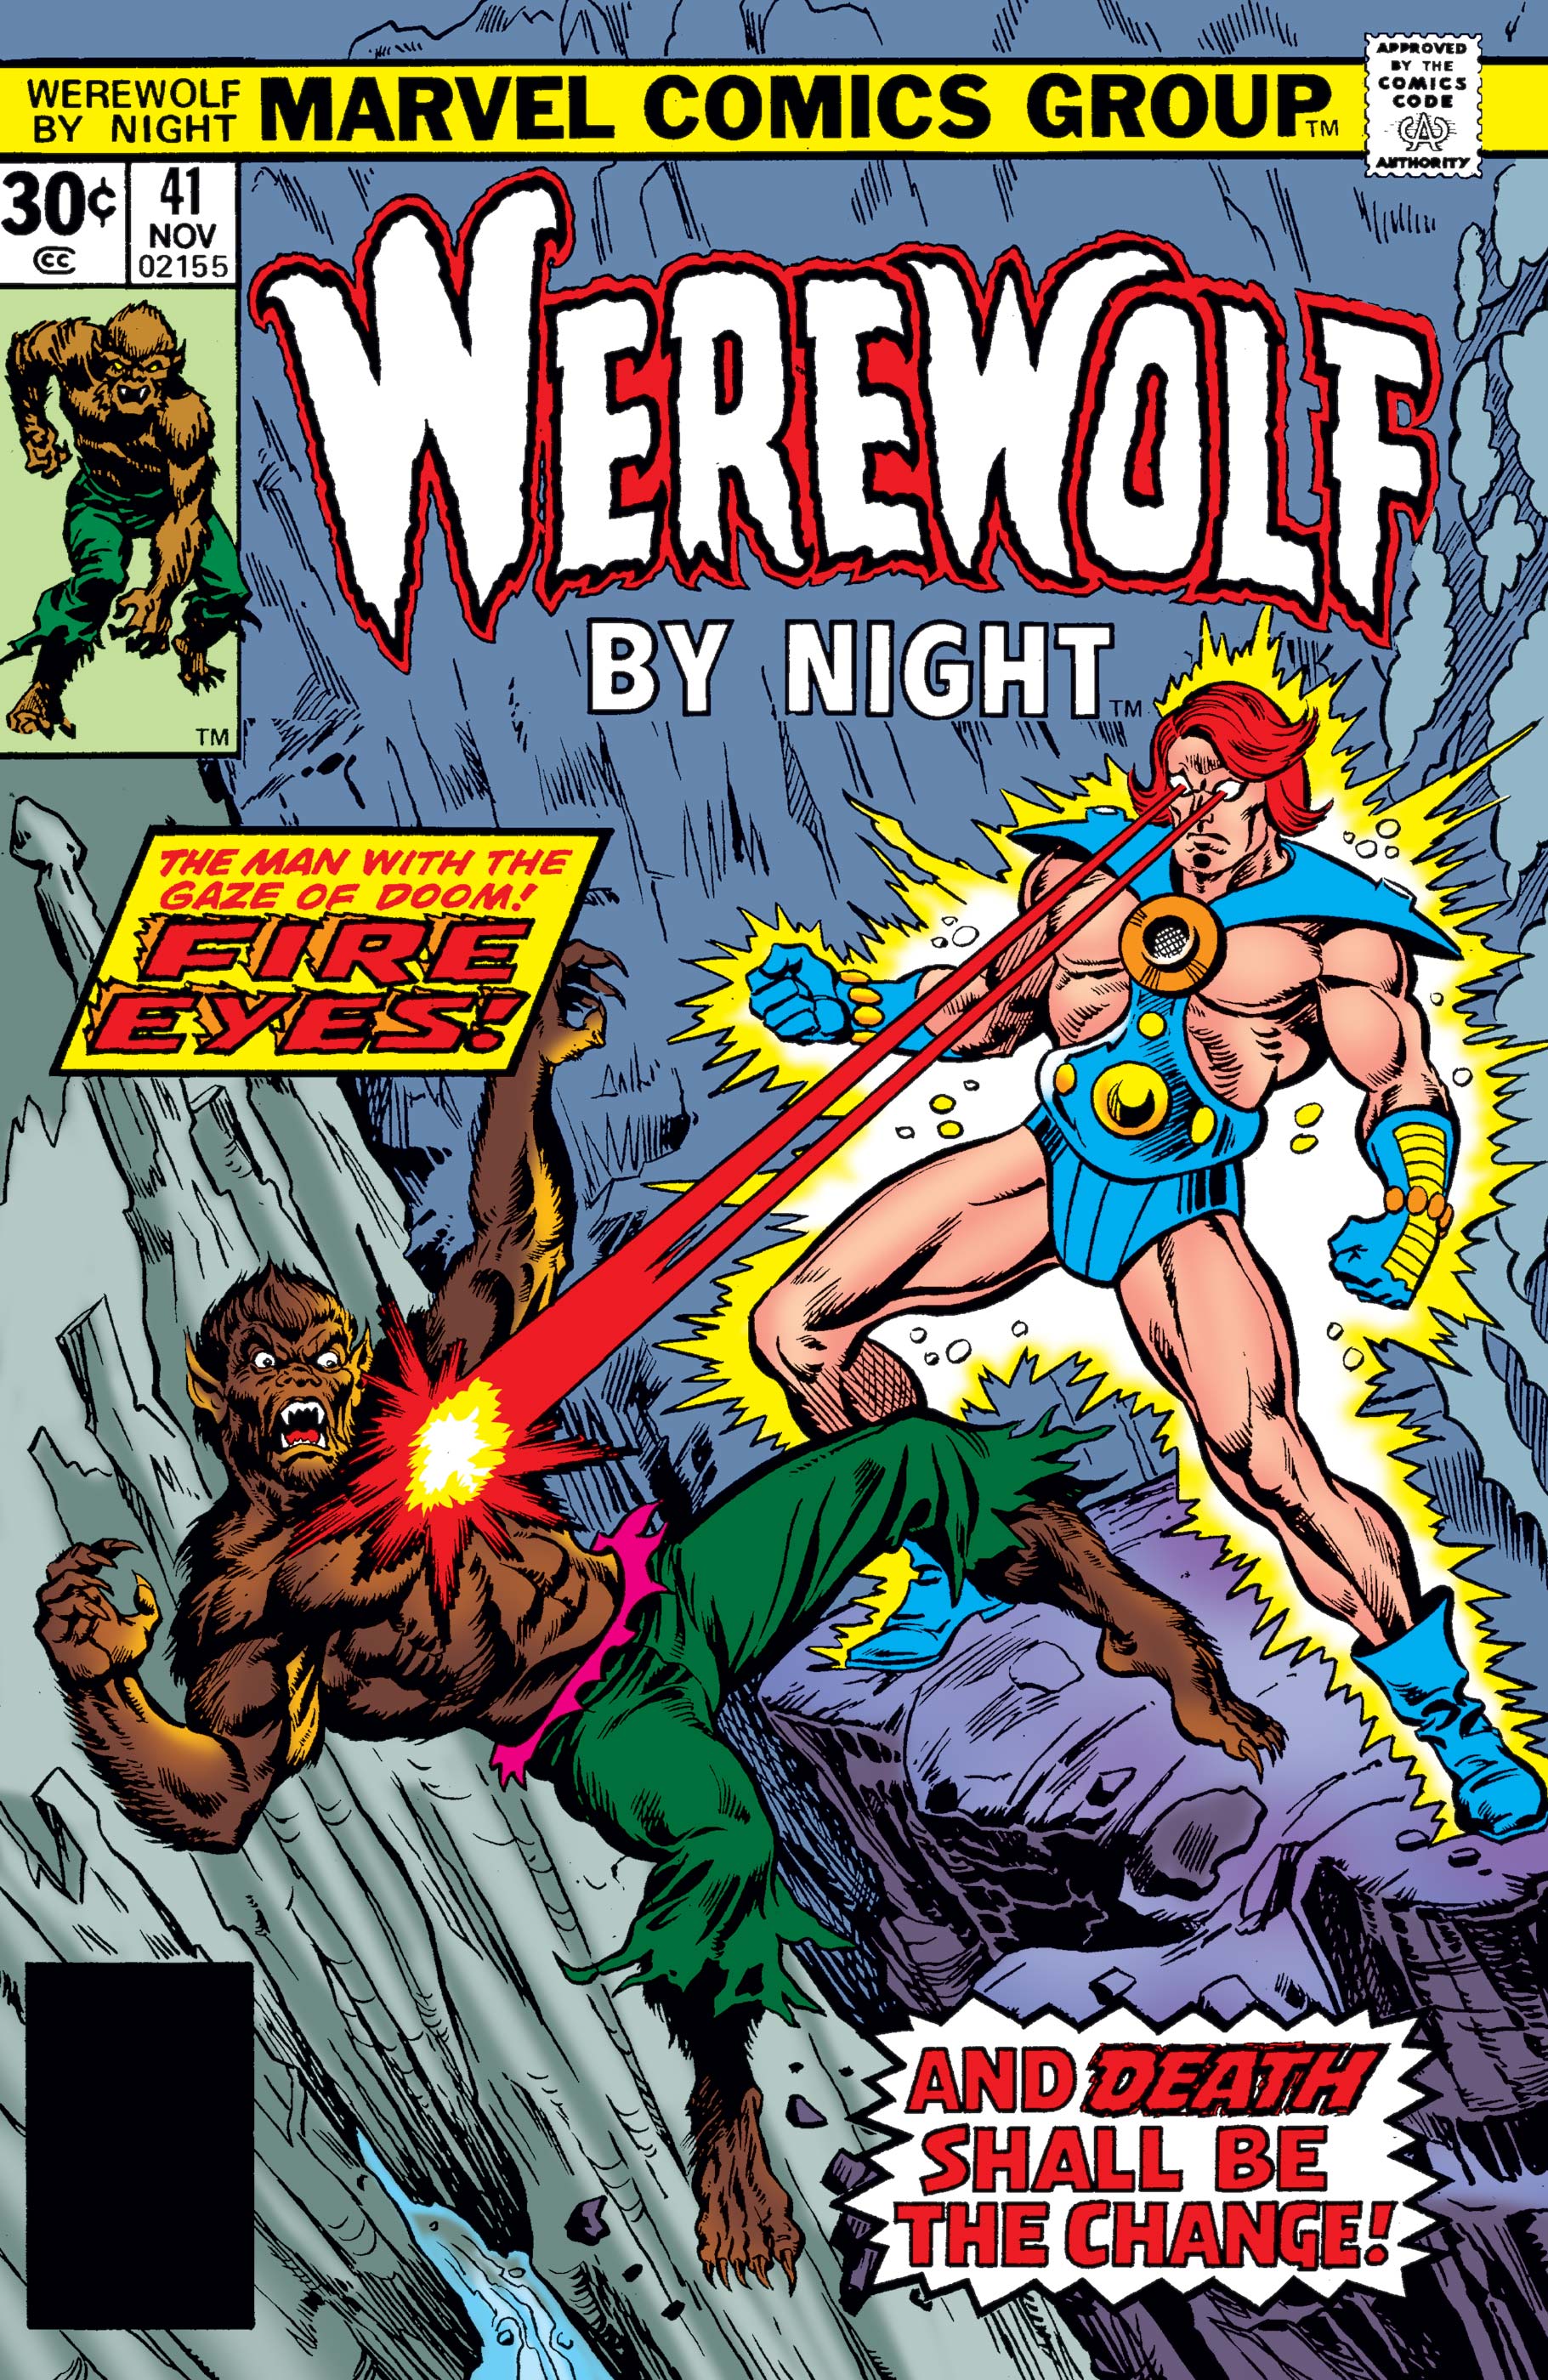 Werewolf By Night (1972) #41